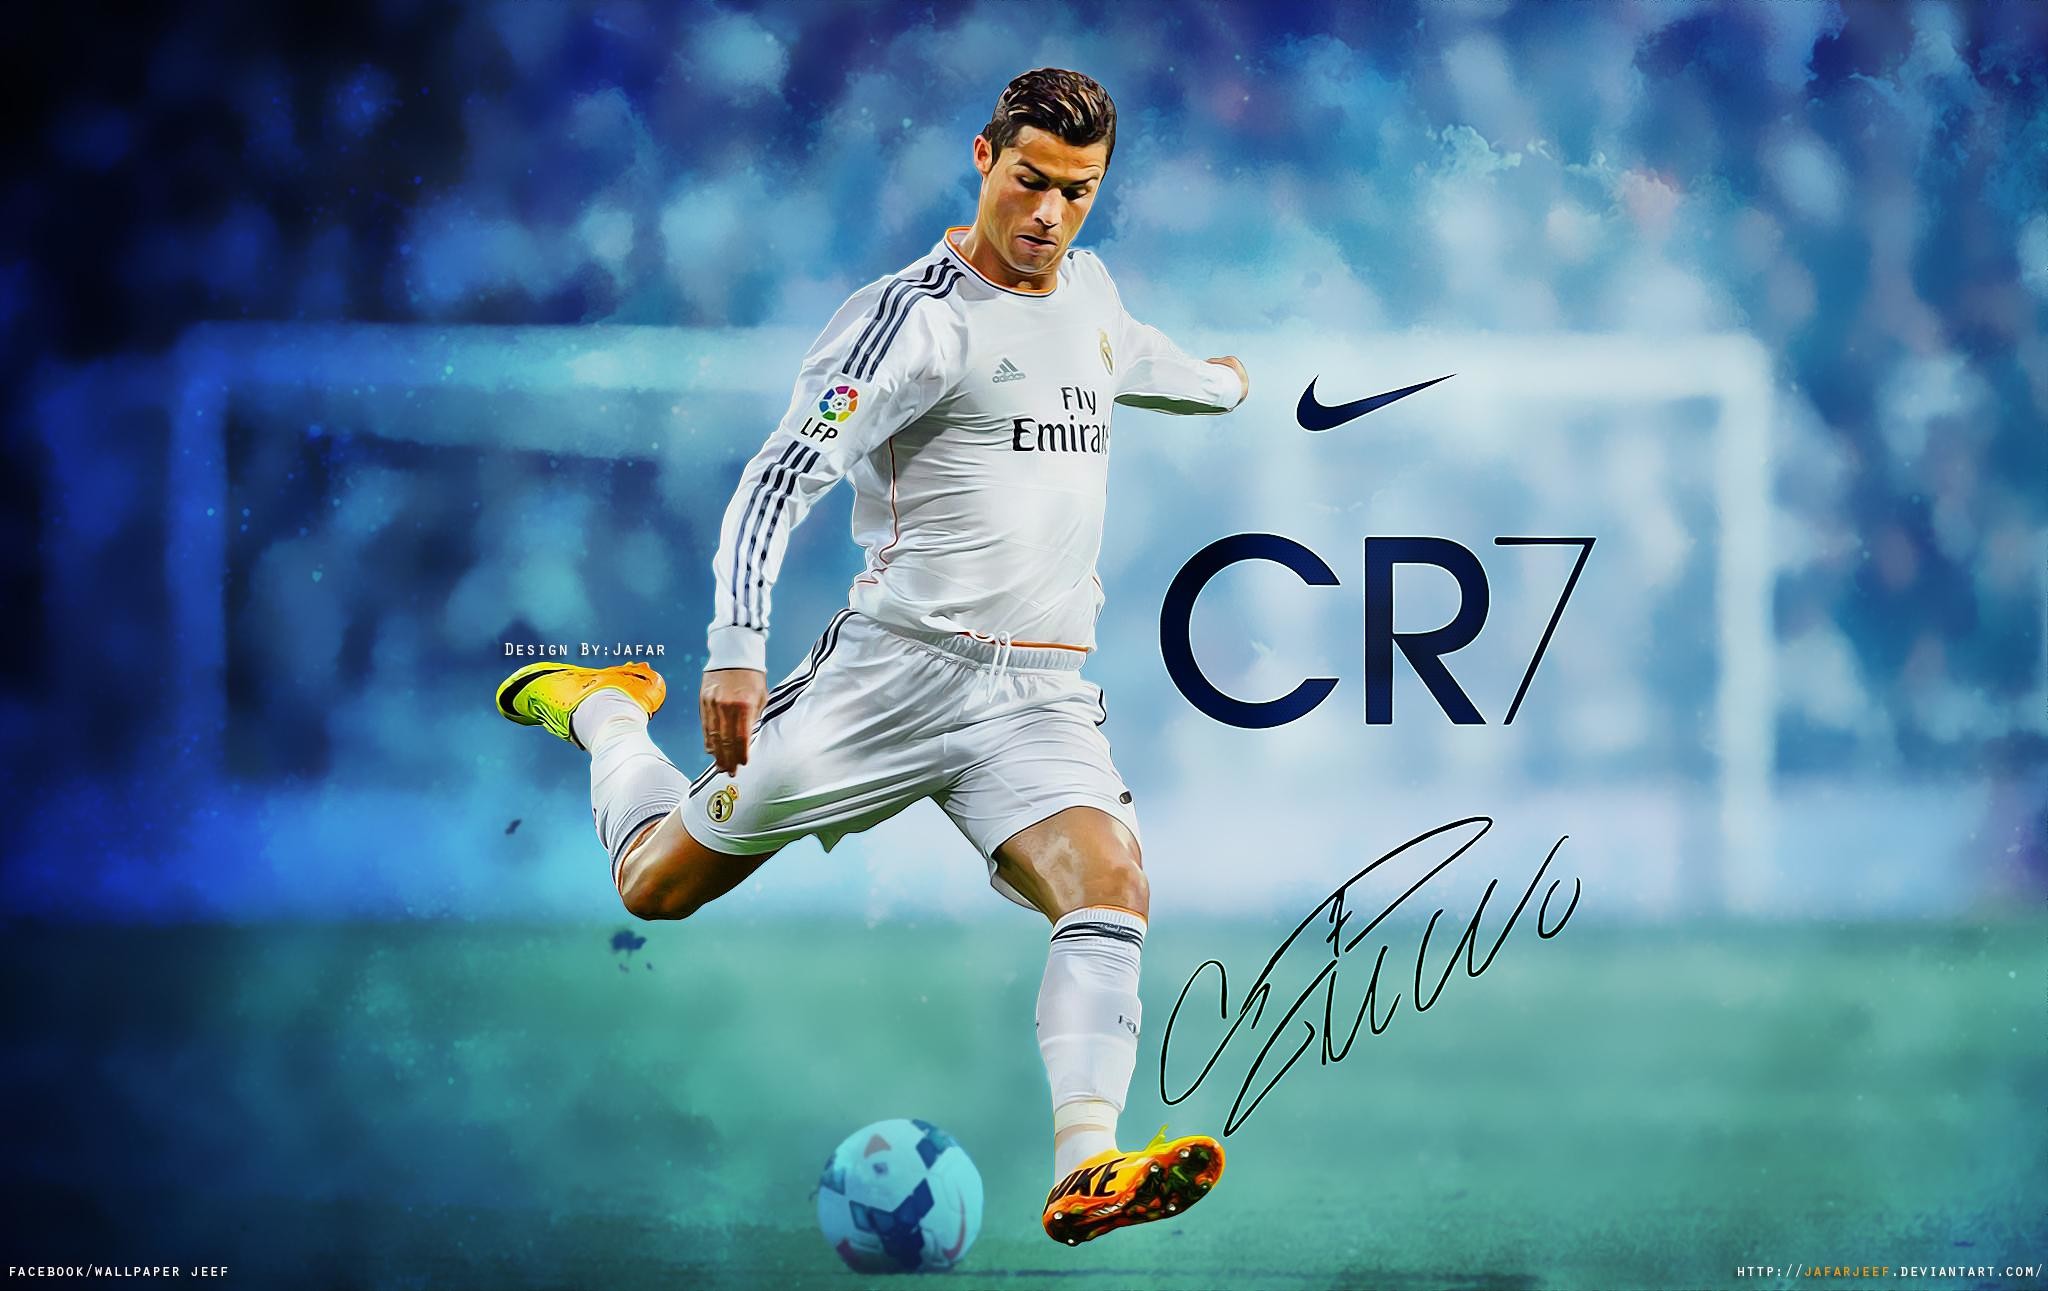 Hình nền Ronaldo CR7: Trang trí màn hình của bạn với hình nền độc đáo của Ronaldo CR7, người được coi là một trong những cầu thủ giỏi nhất mọi thời đại. Hãy cho thế giới thấy sự đam mê của bạn với bộ sưu tập hình nền đầy tinh tế này.